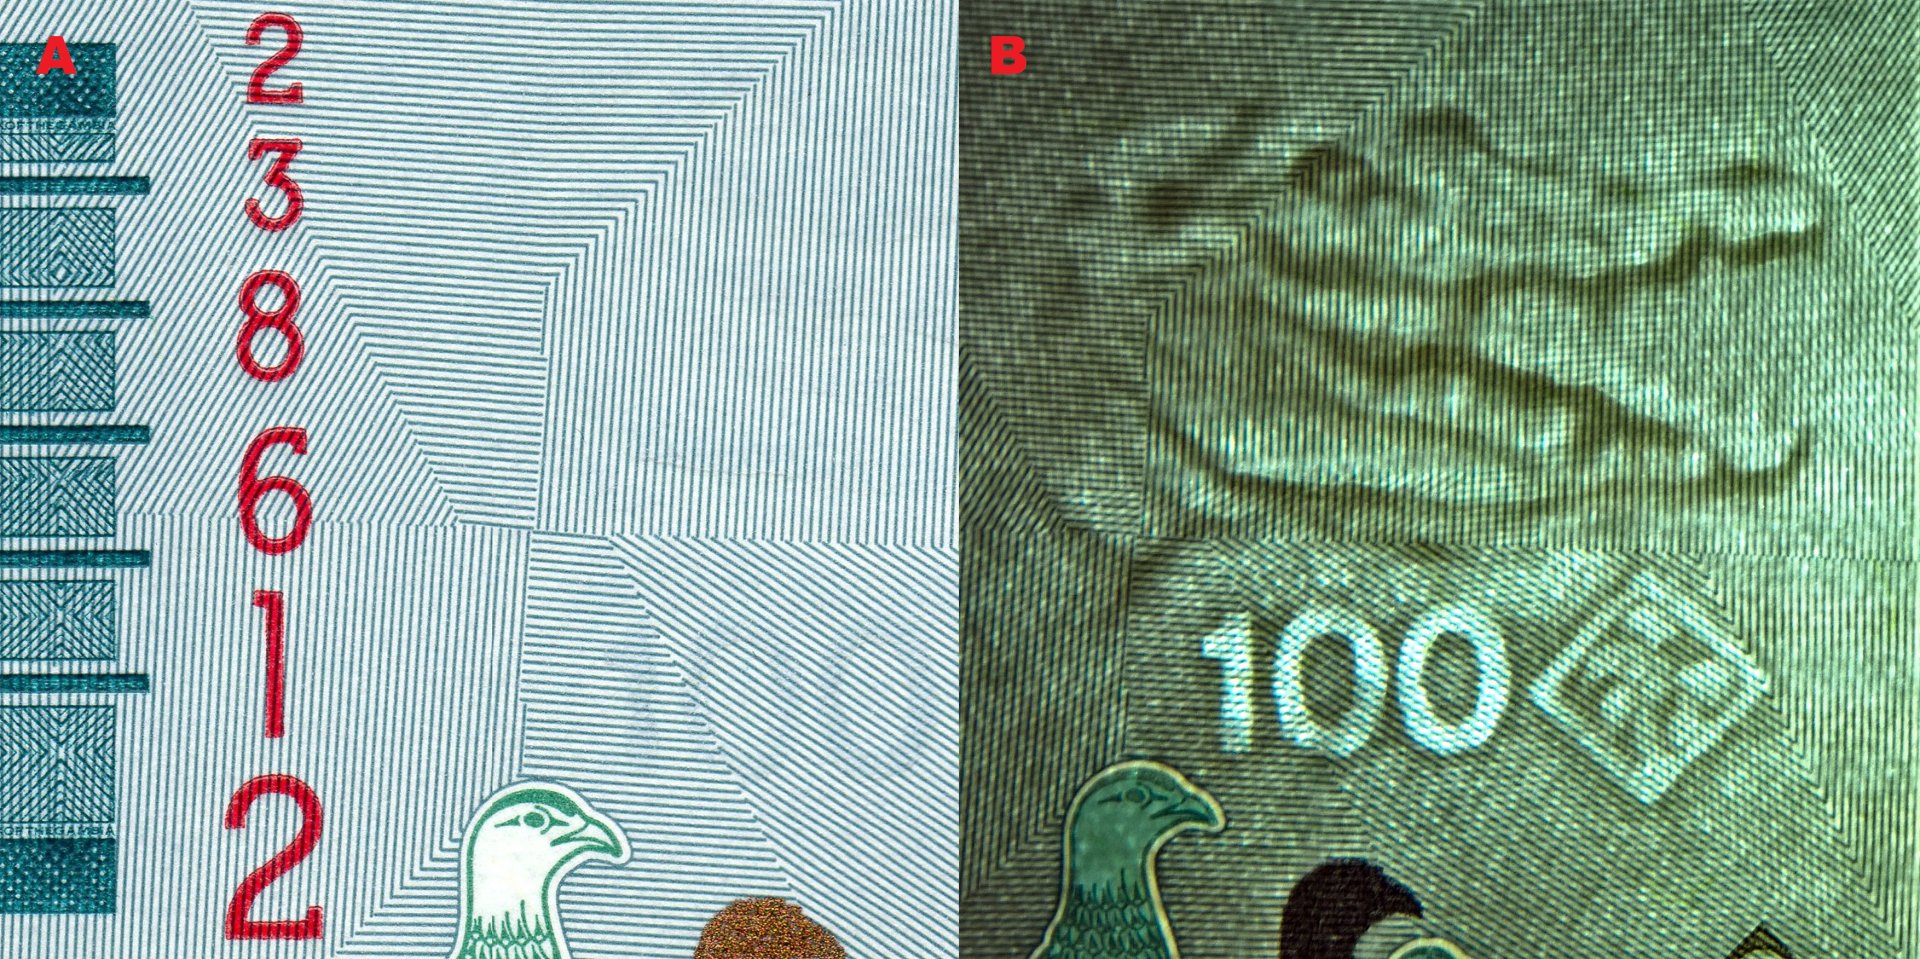 Obr.1 A) Hmatová značka pro nevidomé na levém okraji. B) Nominální obrazový vodoznak vpravo hledící hlavy krokodýla s otevřenou tlamou, kosočtverec s palmou a nominál "100" (elektrotyp)